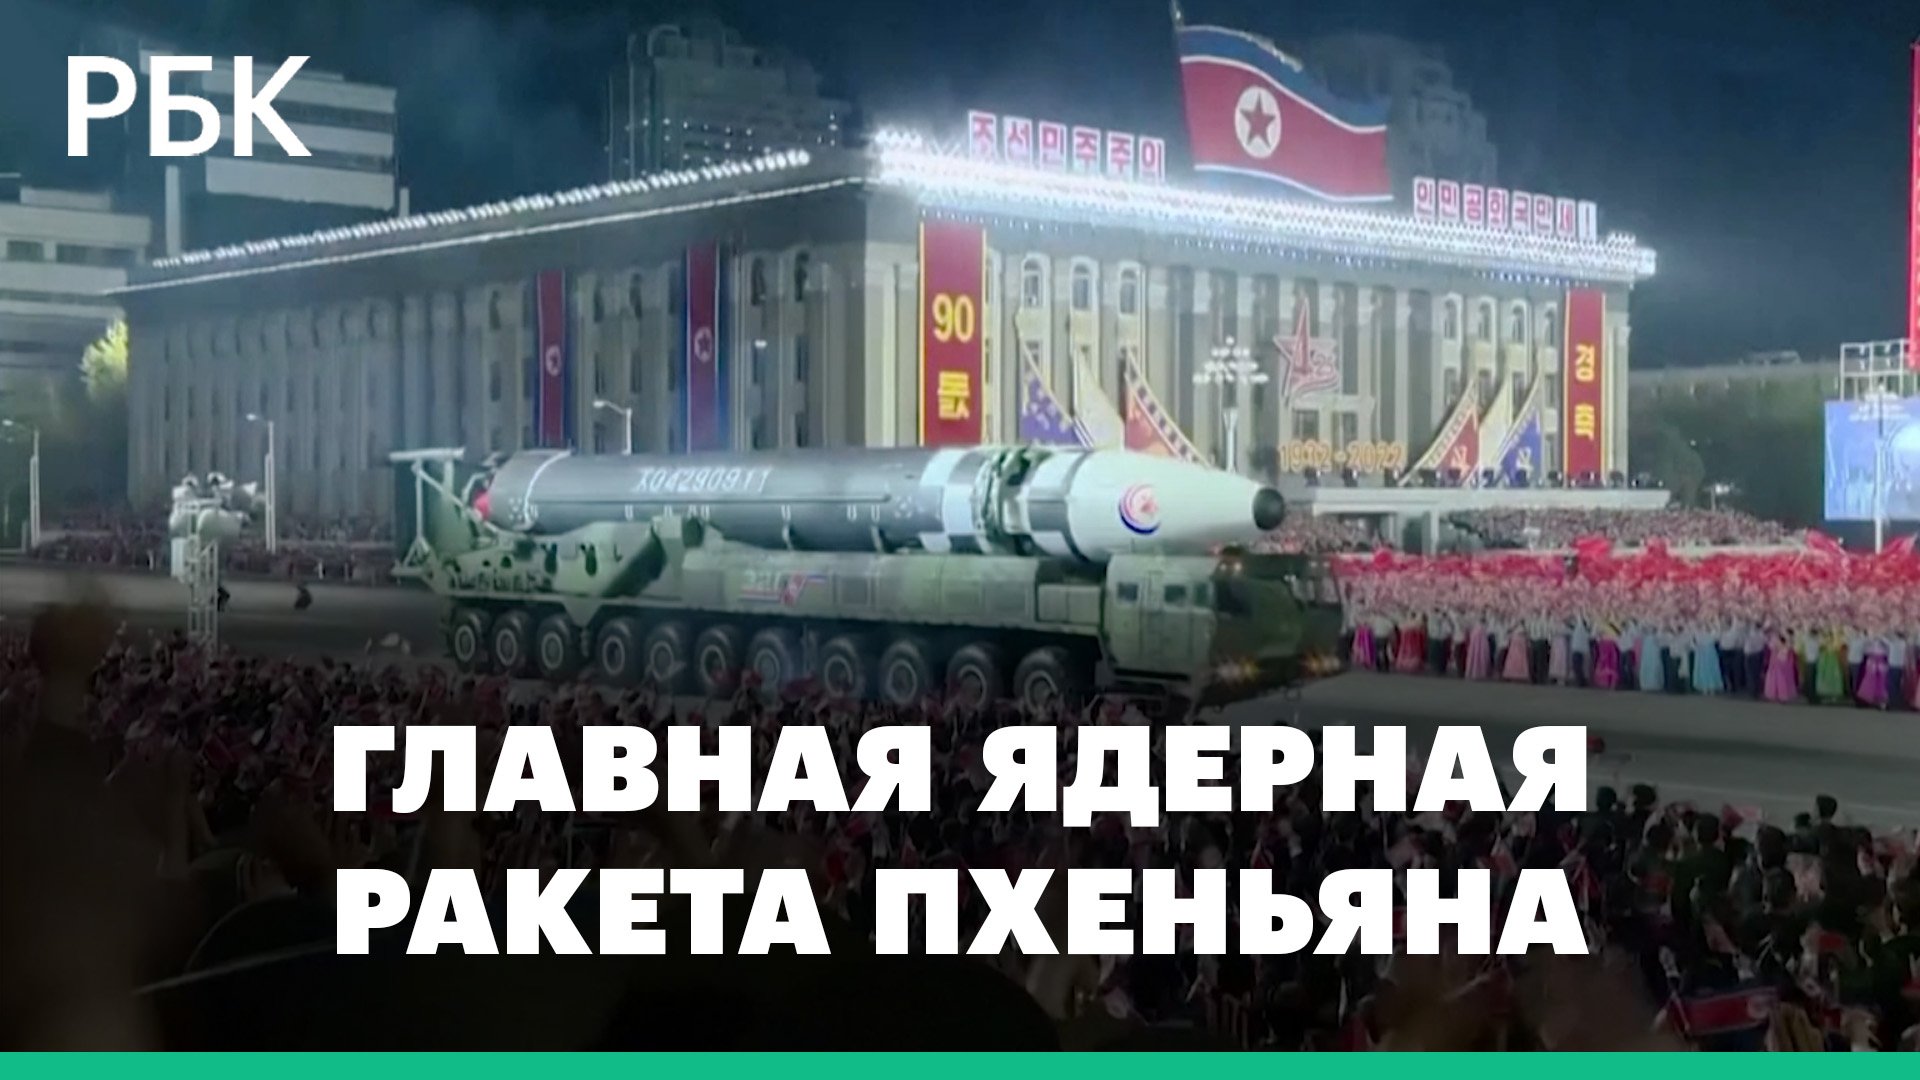 Северная Корея запустила баллистическую ракету в сторону Японии. Ядерное оружие Пхеньяна